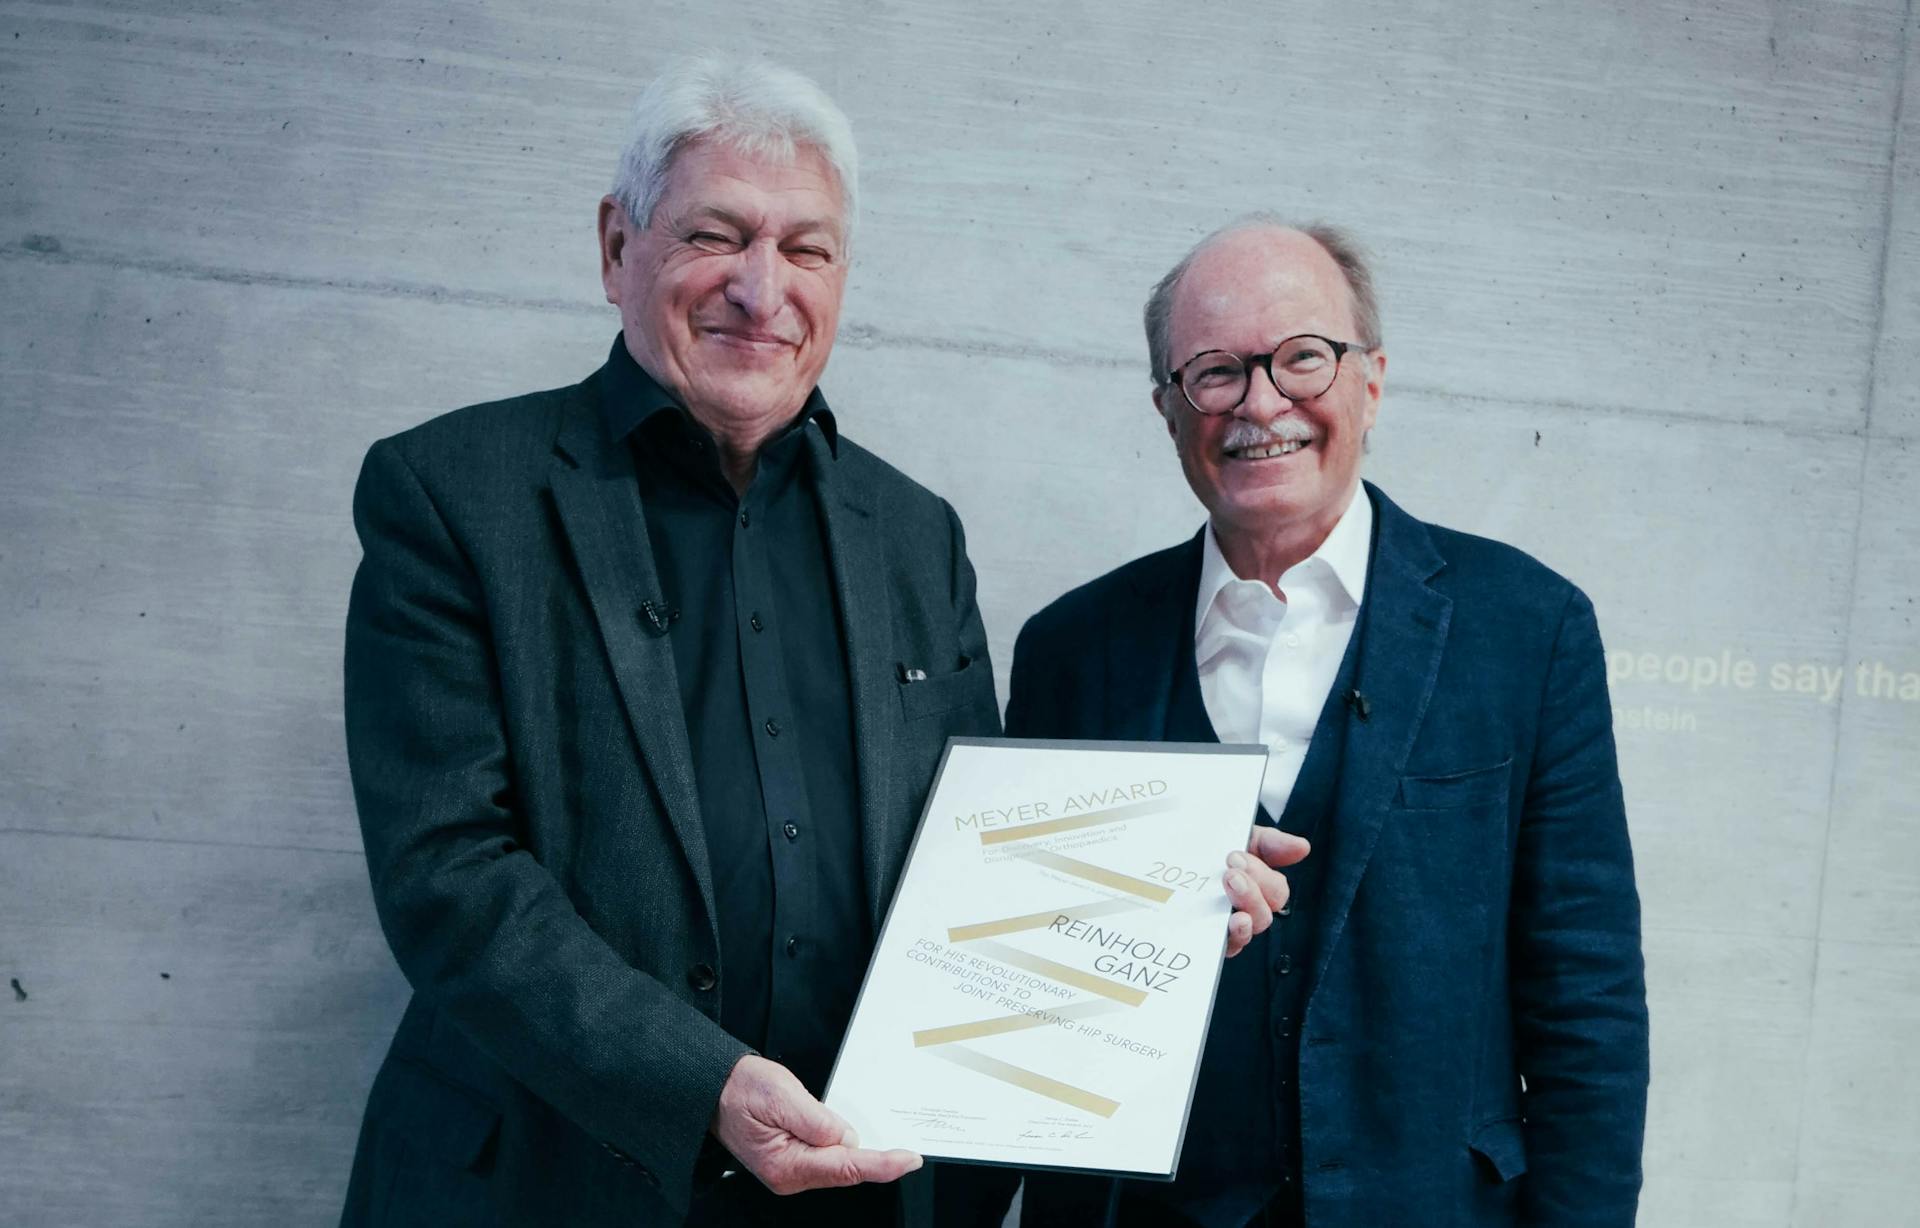 Prof. Reinhold Ganz wins the first Meyer Award